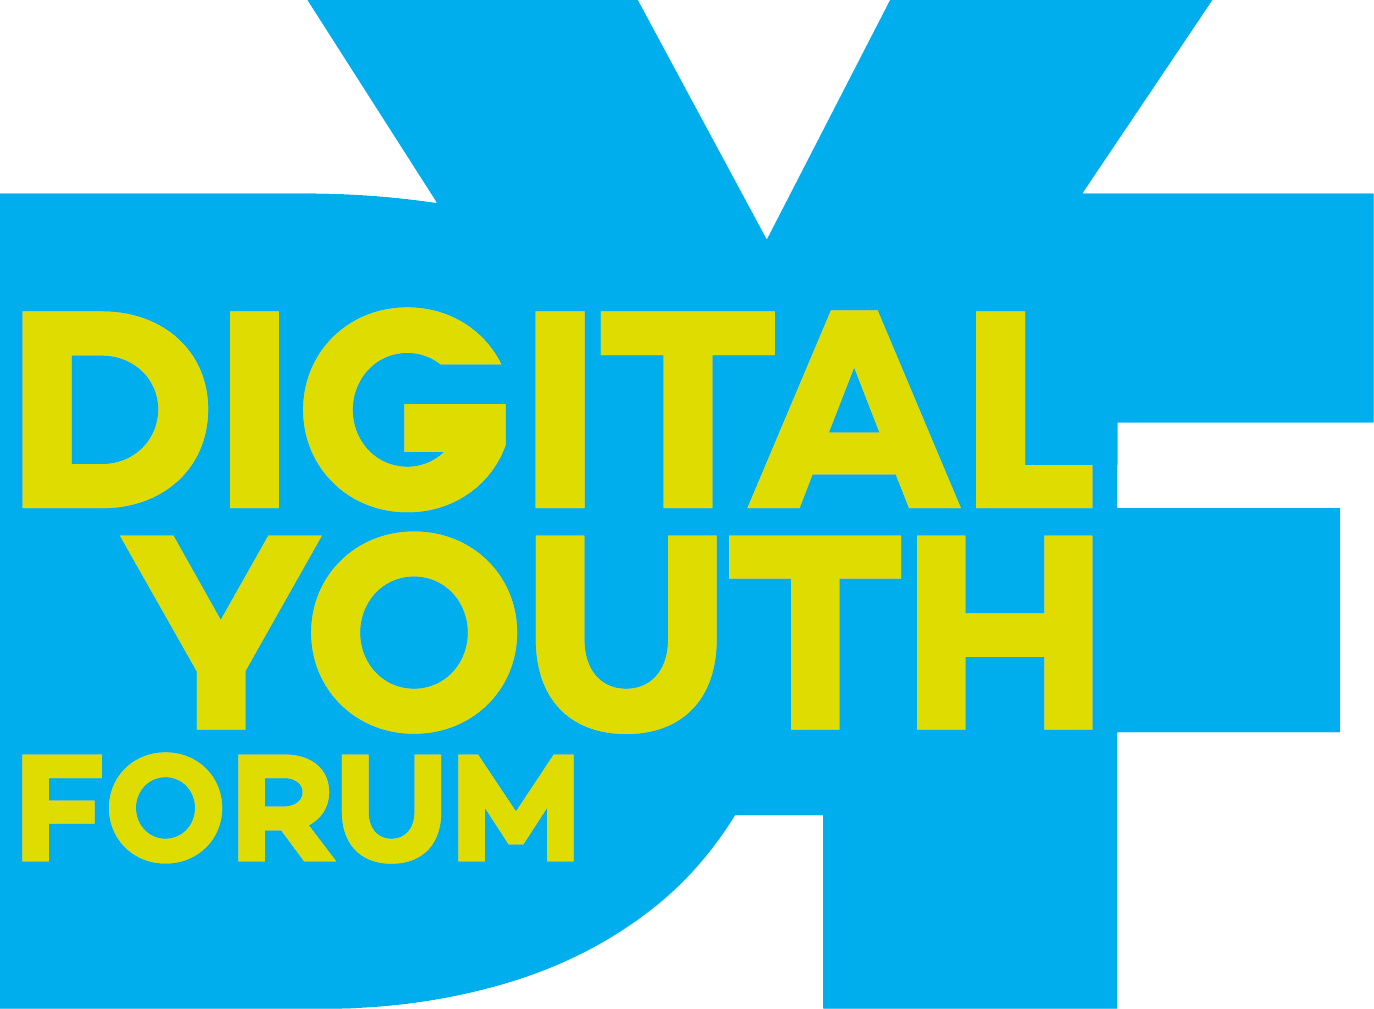 Digital Youth Forum 2020